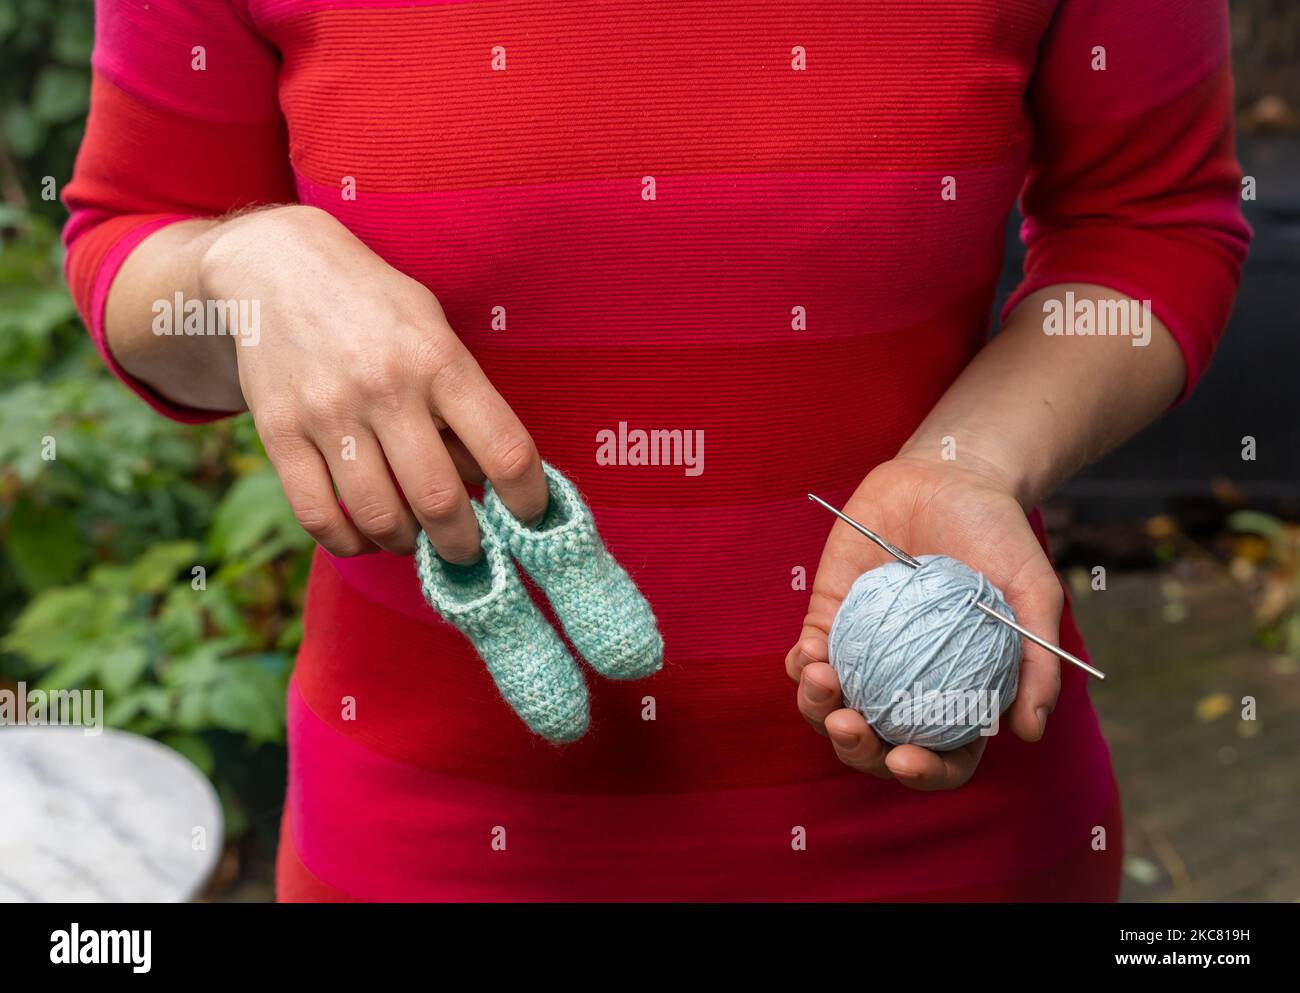 Femme en robe rouge tenant des chaussettes ou des chaussons faits main crochet bébé en laine d'une main, et boule de laine avec aiguille crochet dans l'autre, sélectionnez Banque D'Images